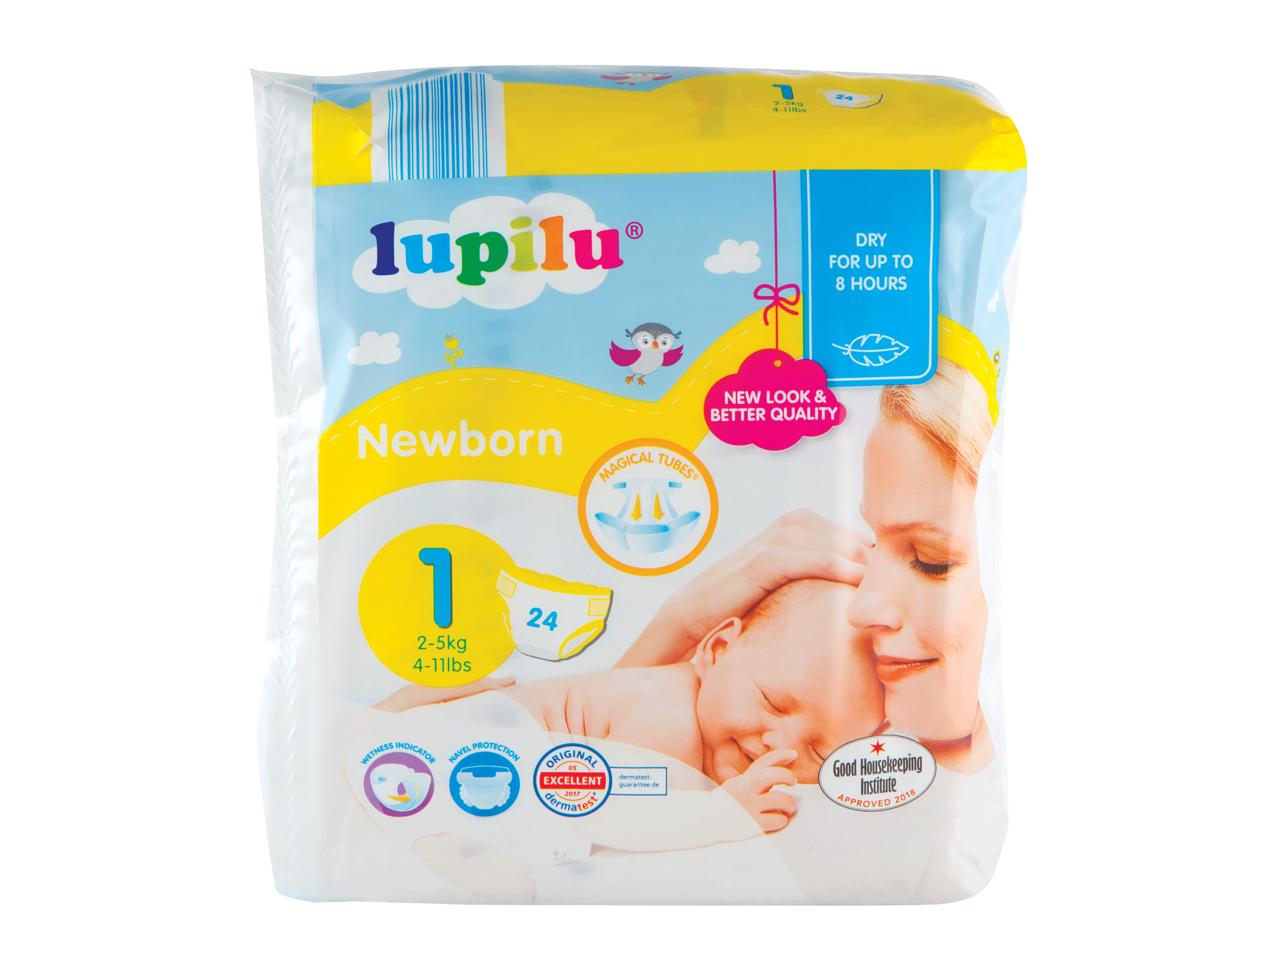 LUPILU Newborn Nappies